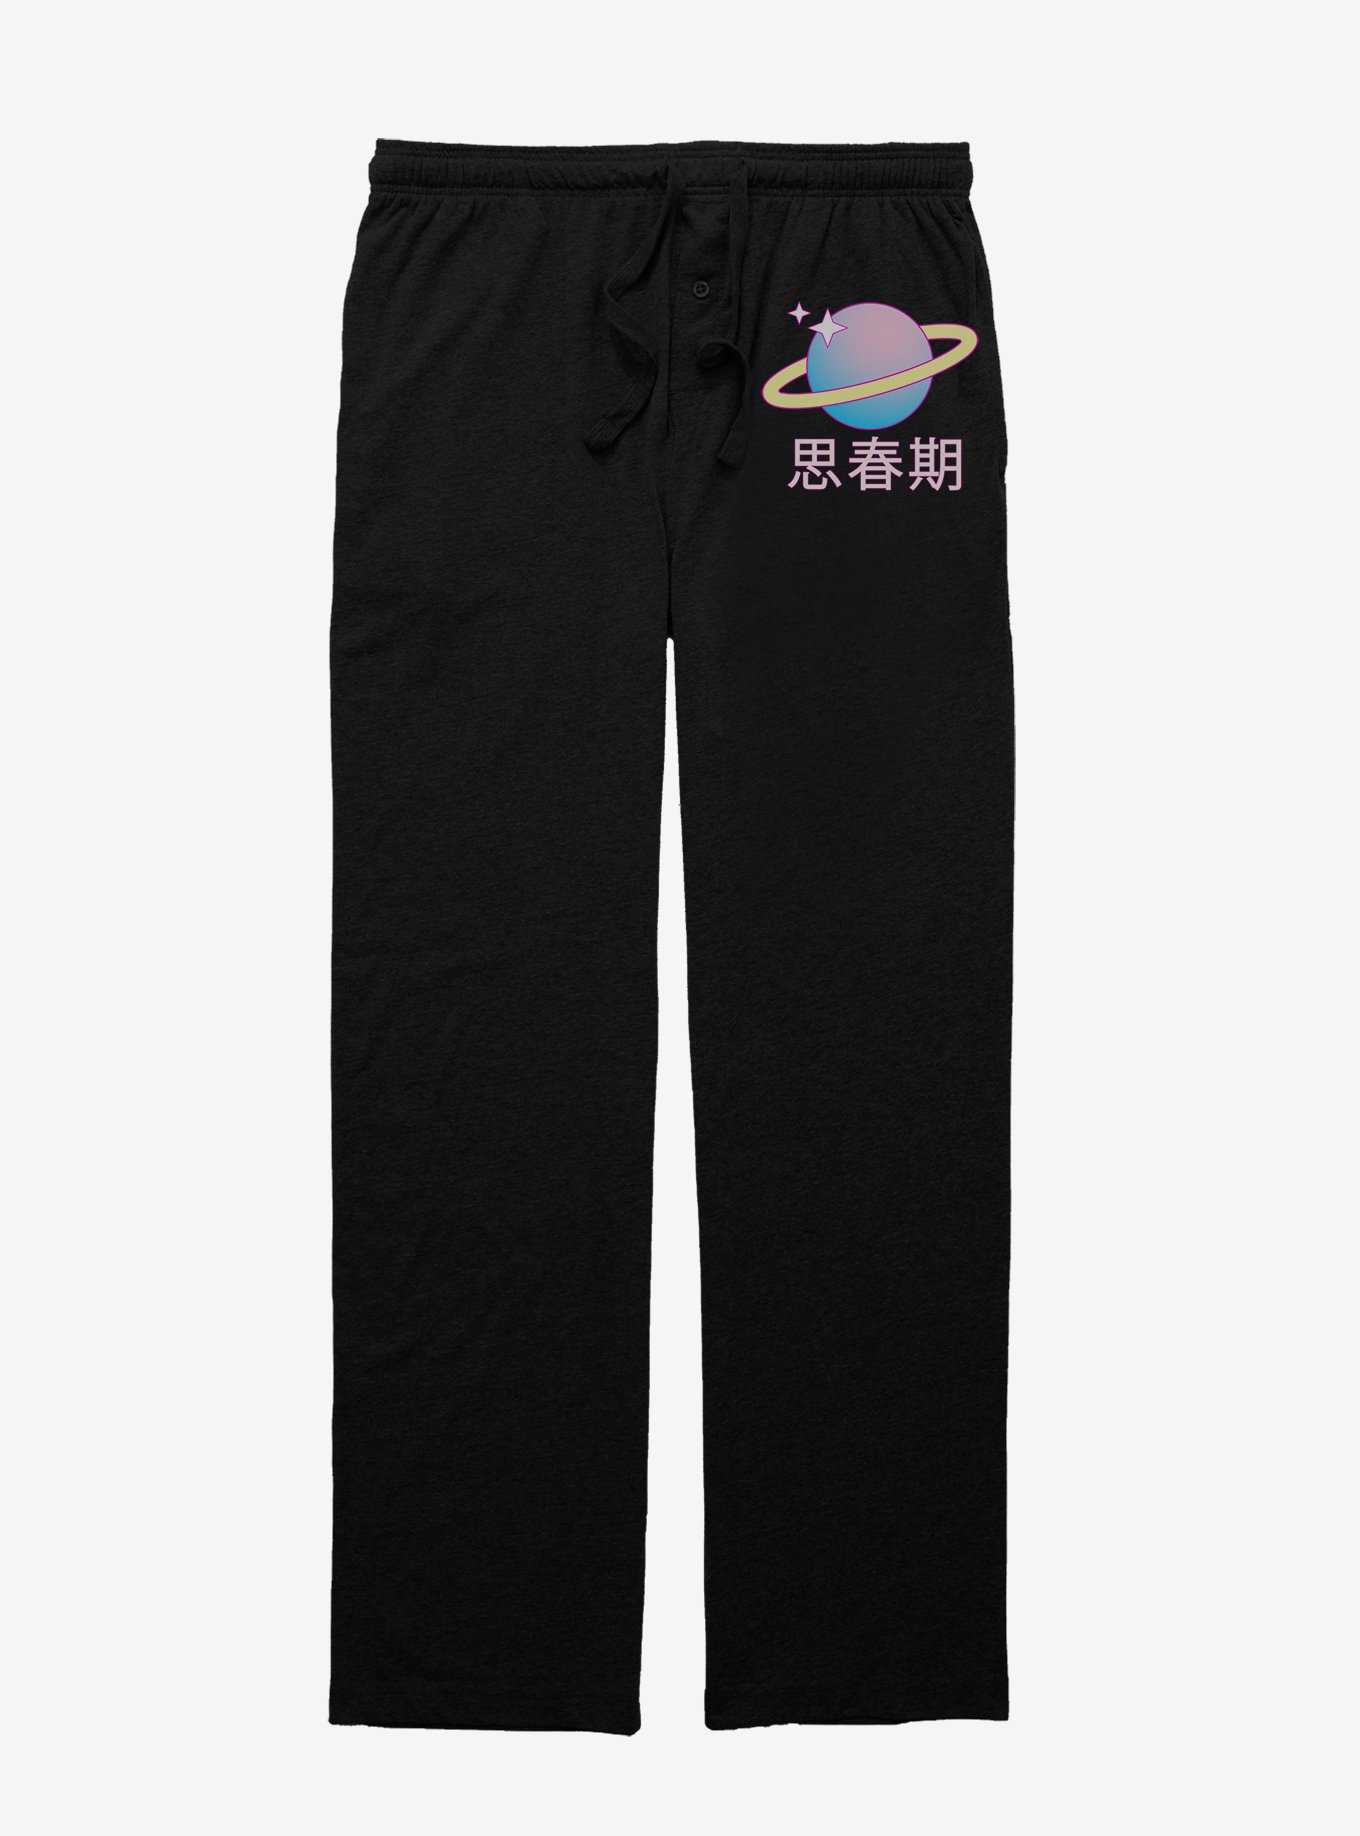 Spacey Saturn Pajama Pants, , hi-res